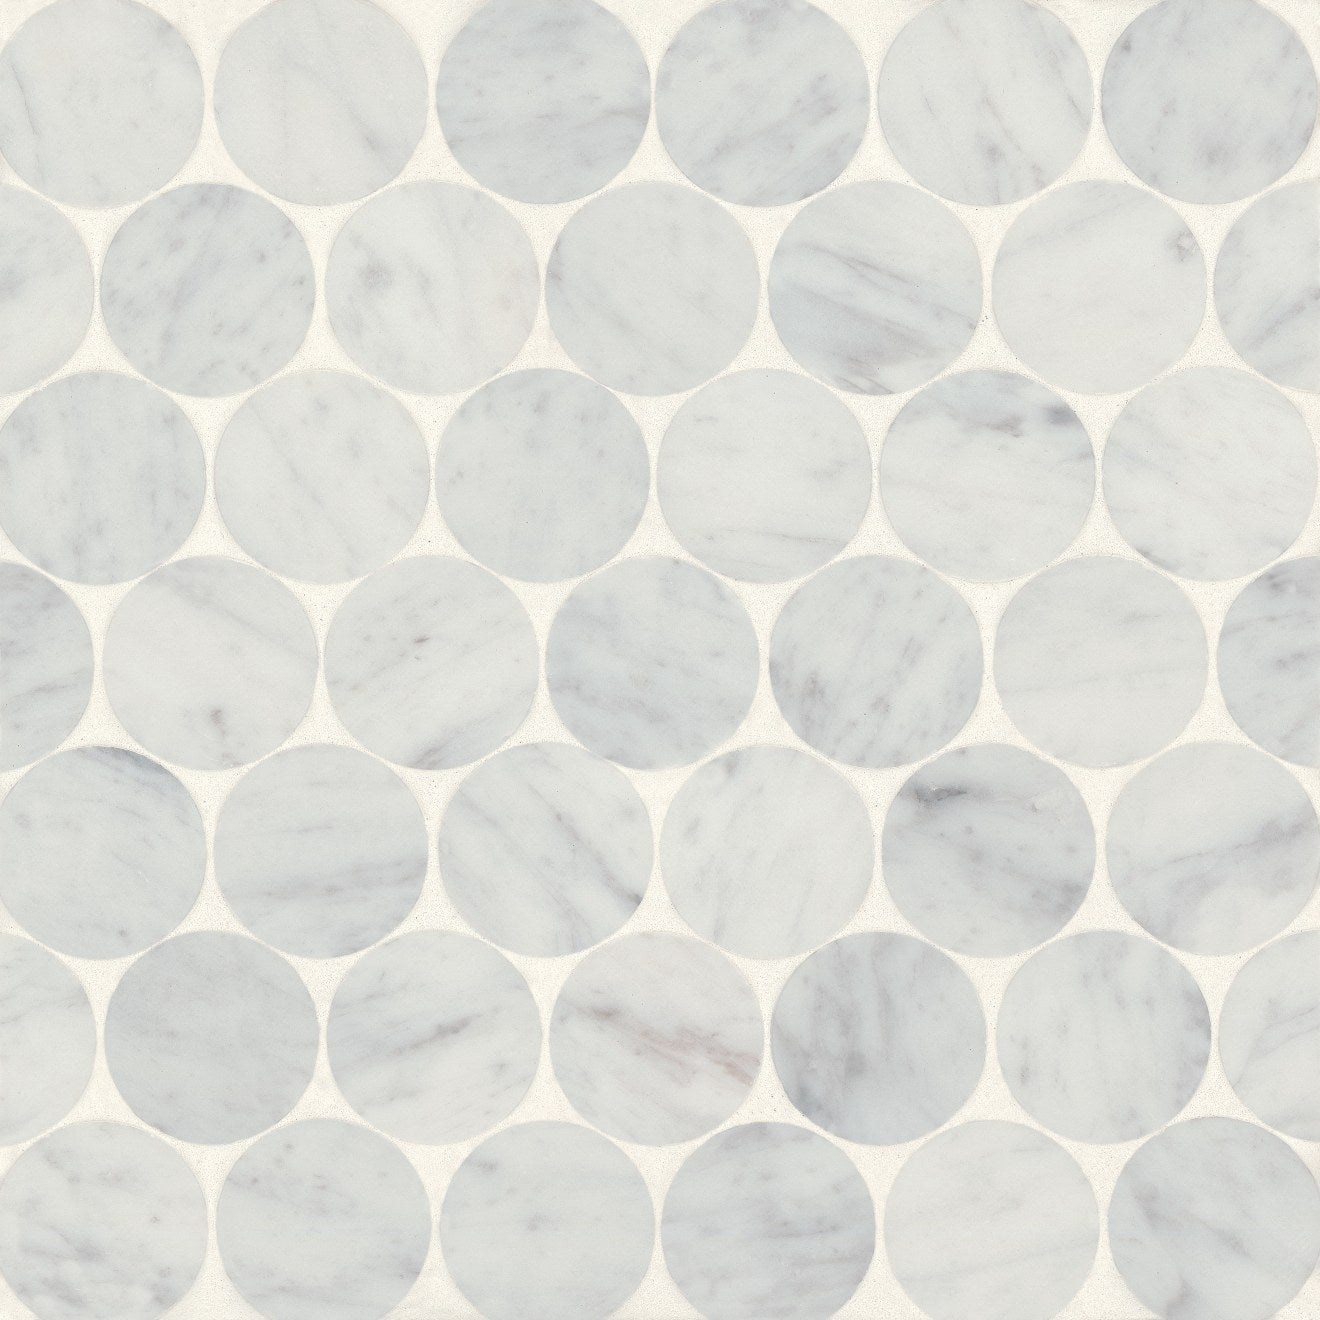 Bedrosians Monet Honed Marble Mosaic 10 Tile White Carrara Floorzz